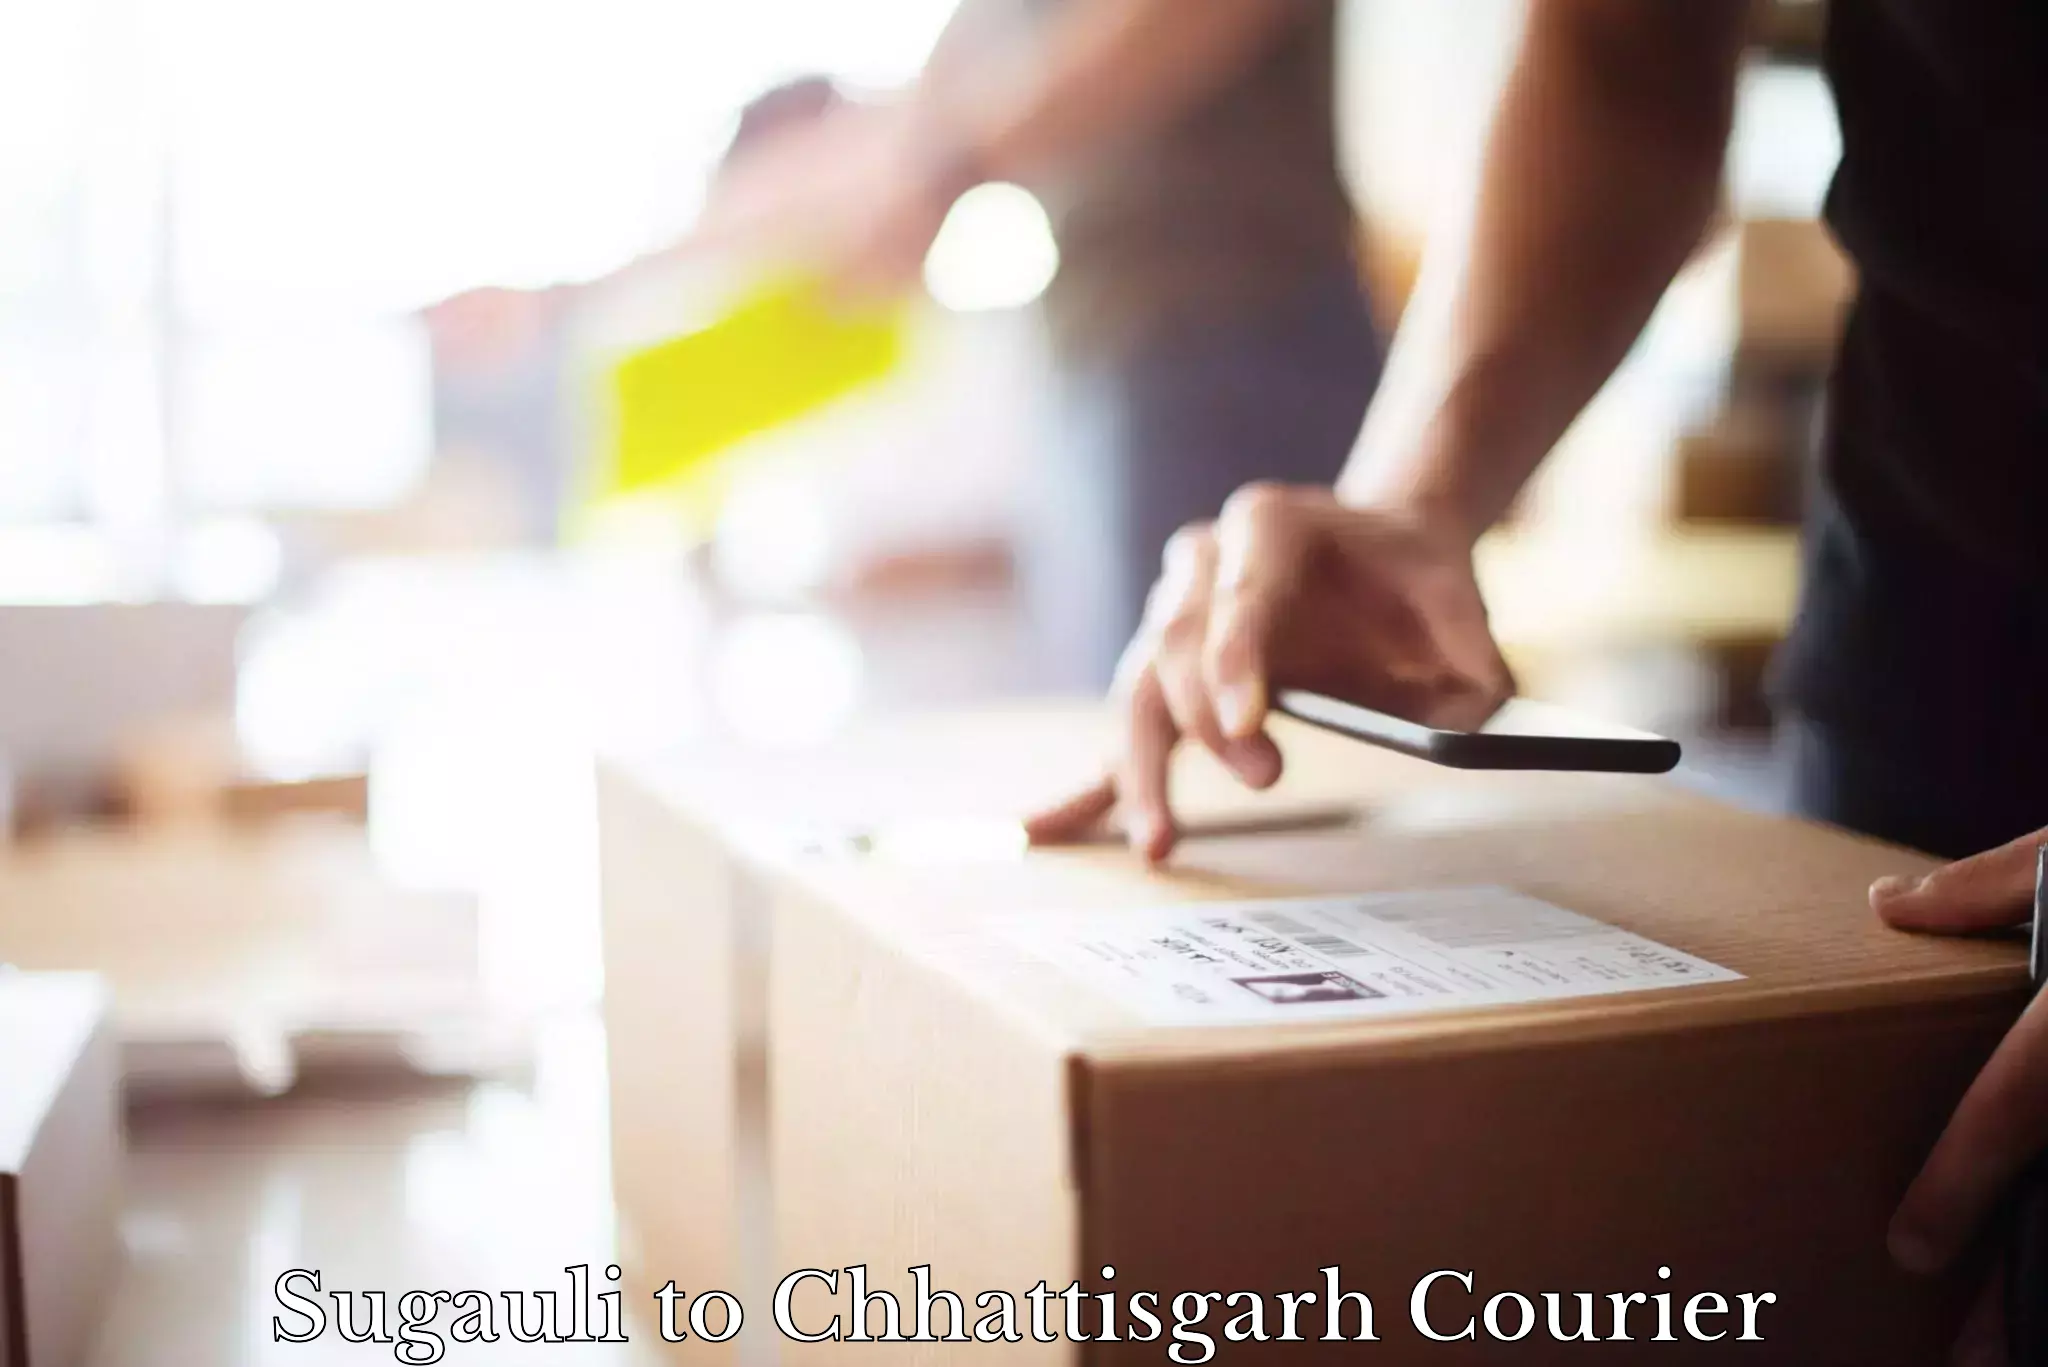 Same-day delivery solutions Sugauli to Chhattisgarh